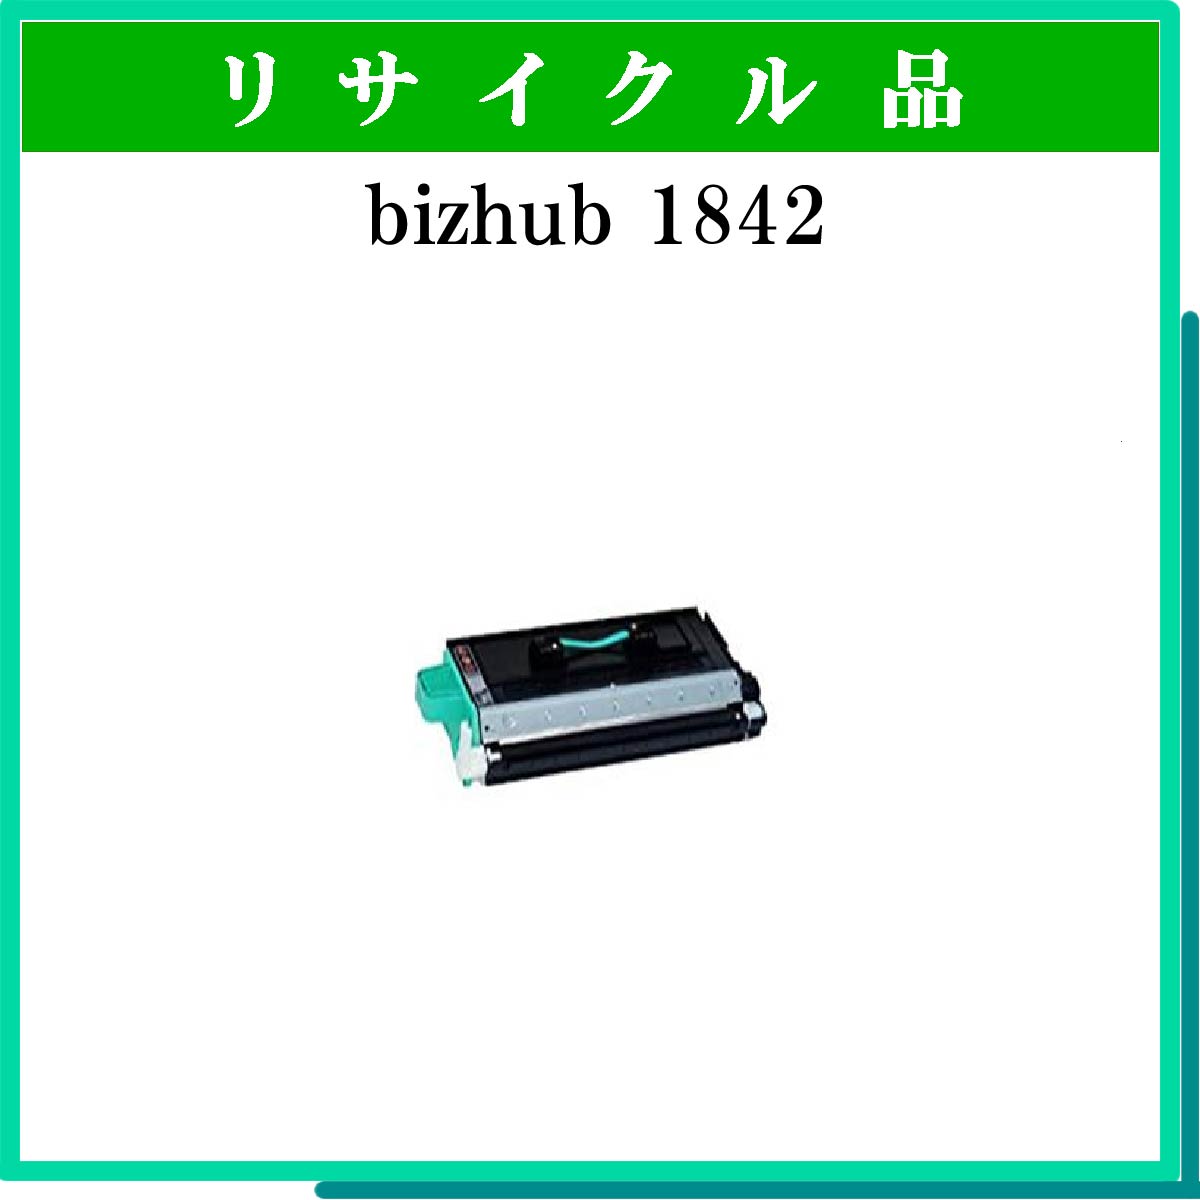 bizhub 1842